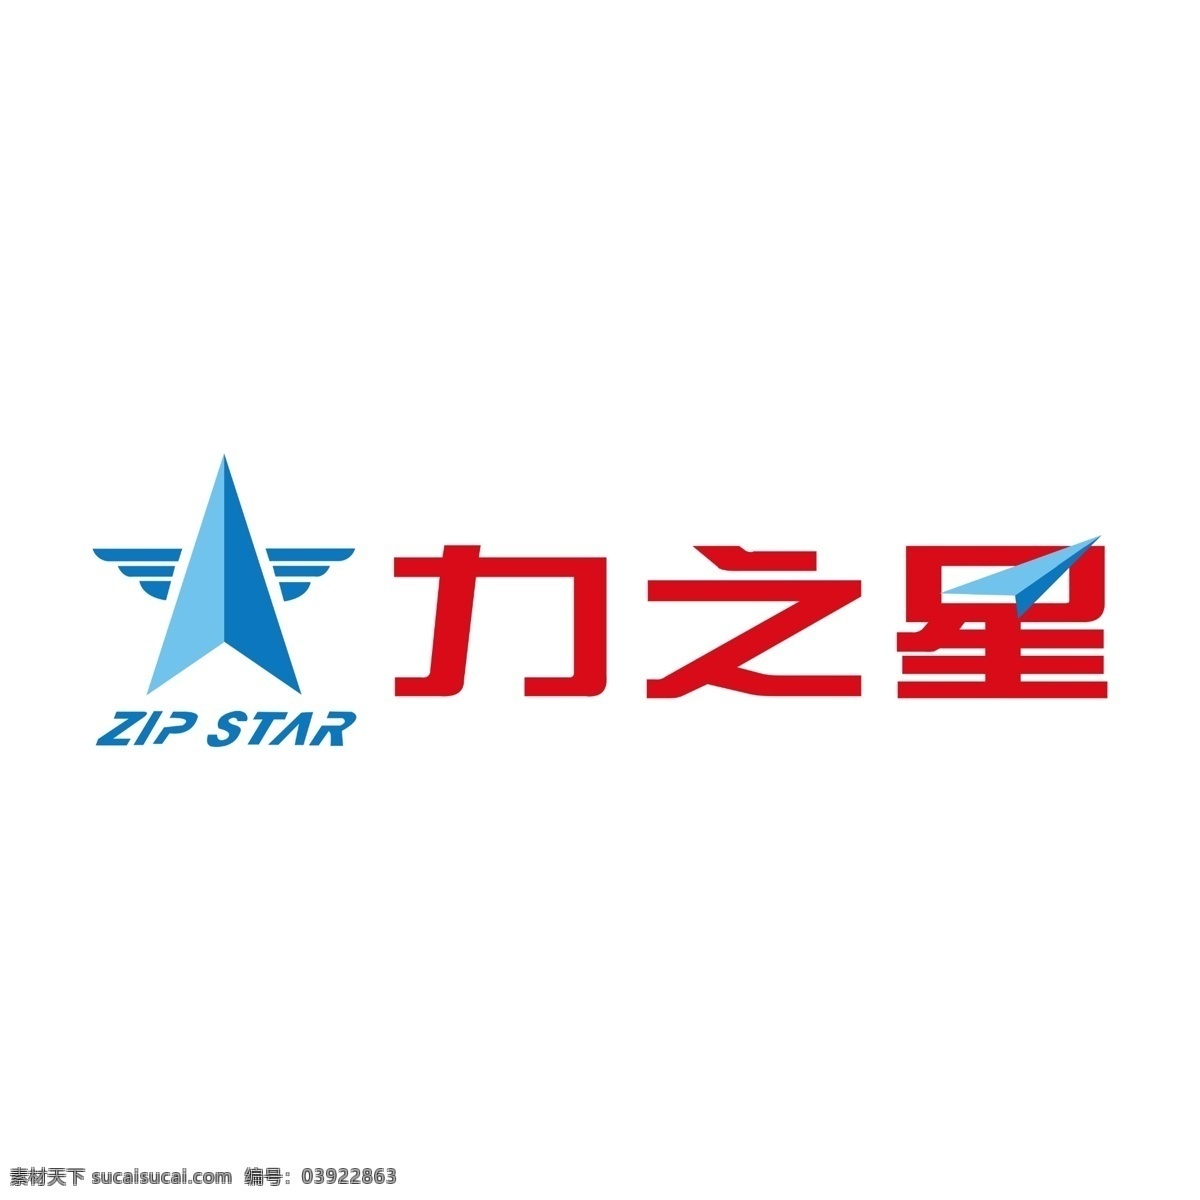 力之星图片 力之星 力之星标志 力 之星 logo 力之星摩托 企业logo